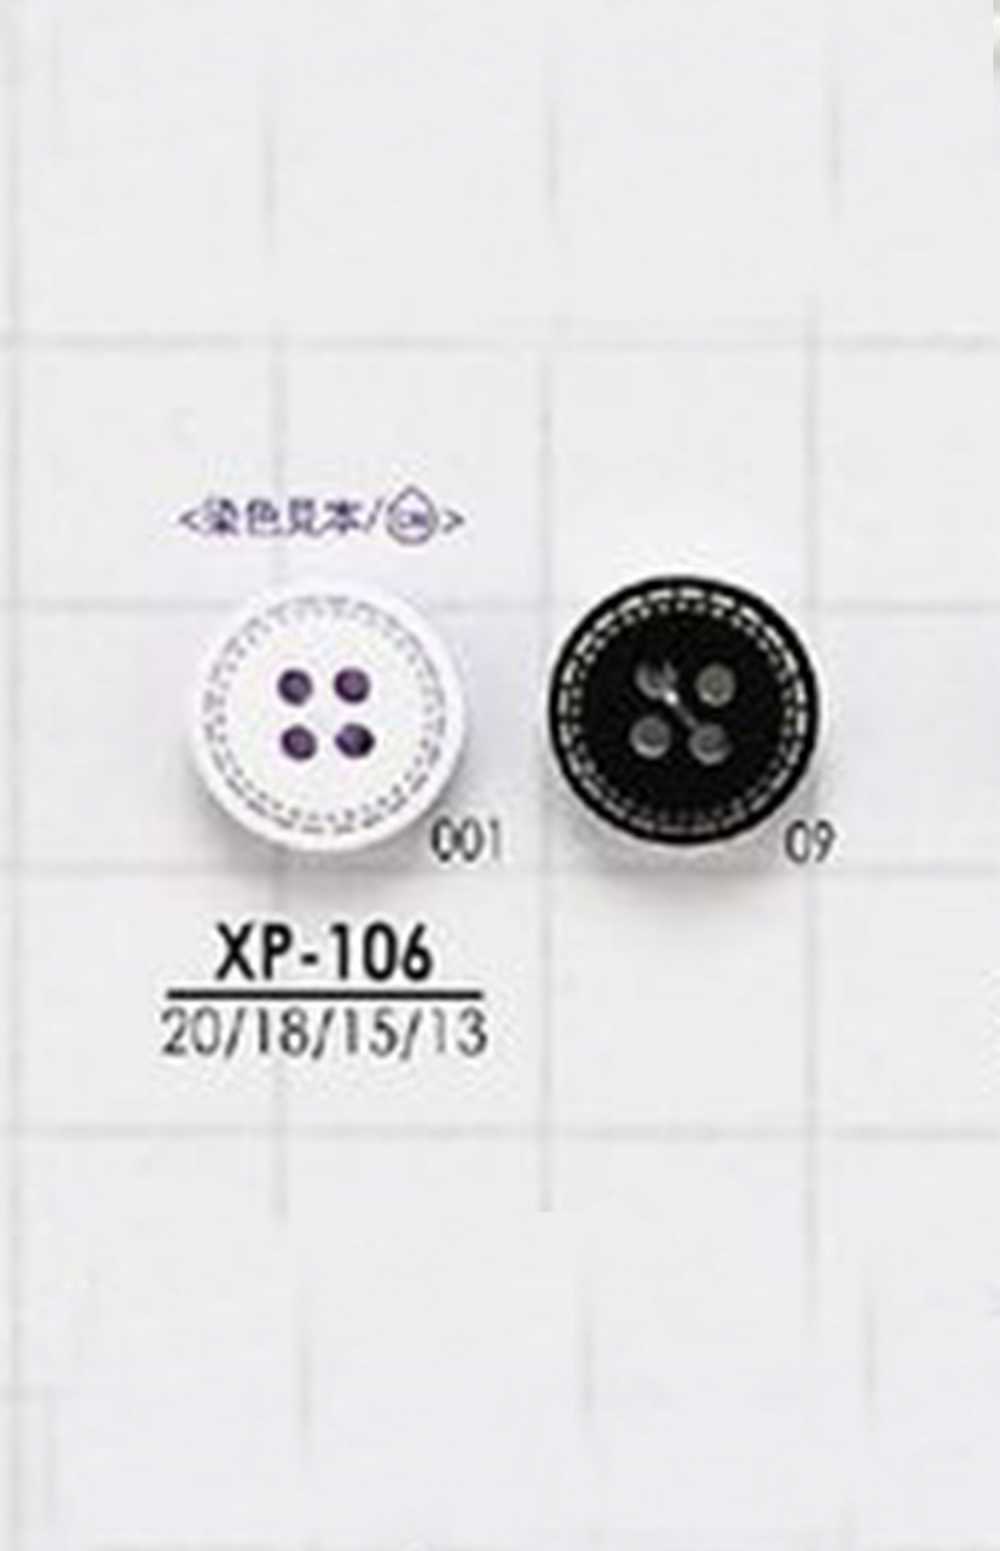 XP-106 Bottone In Poliestere[Pulsante] IRIS